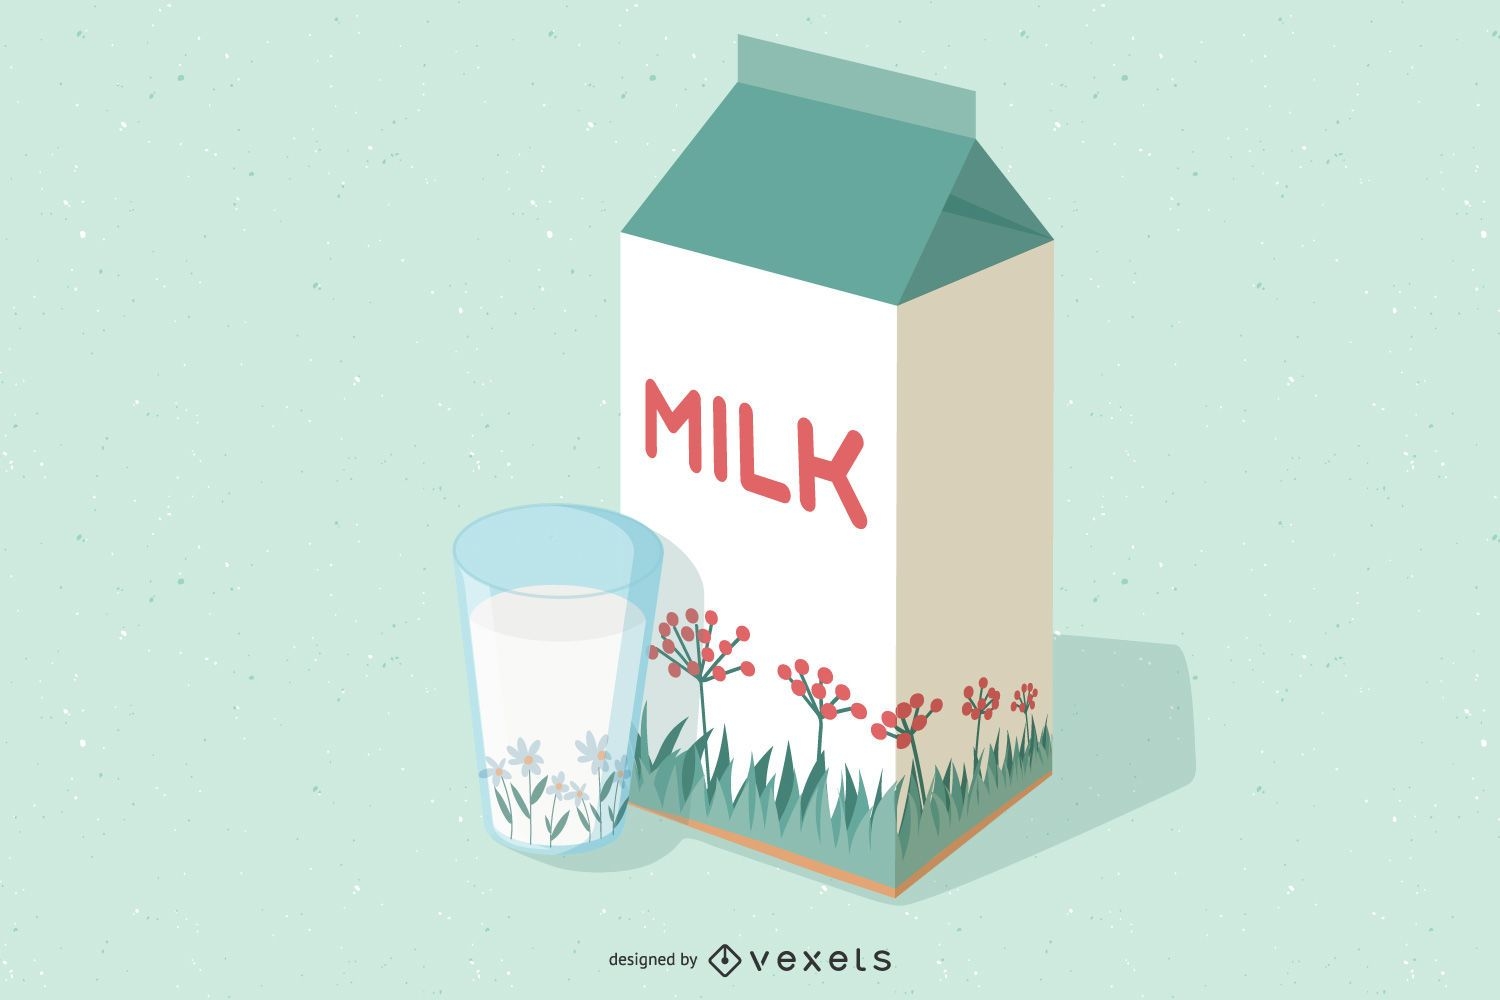 Paquete de leche 3D con diseño floral